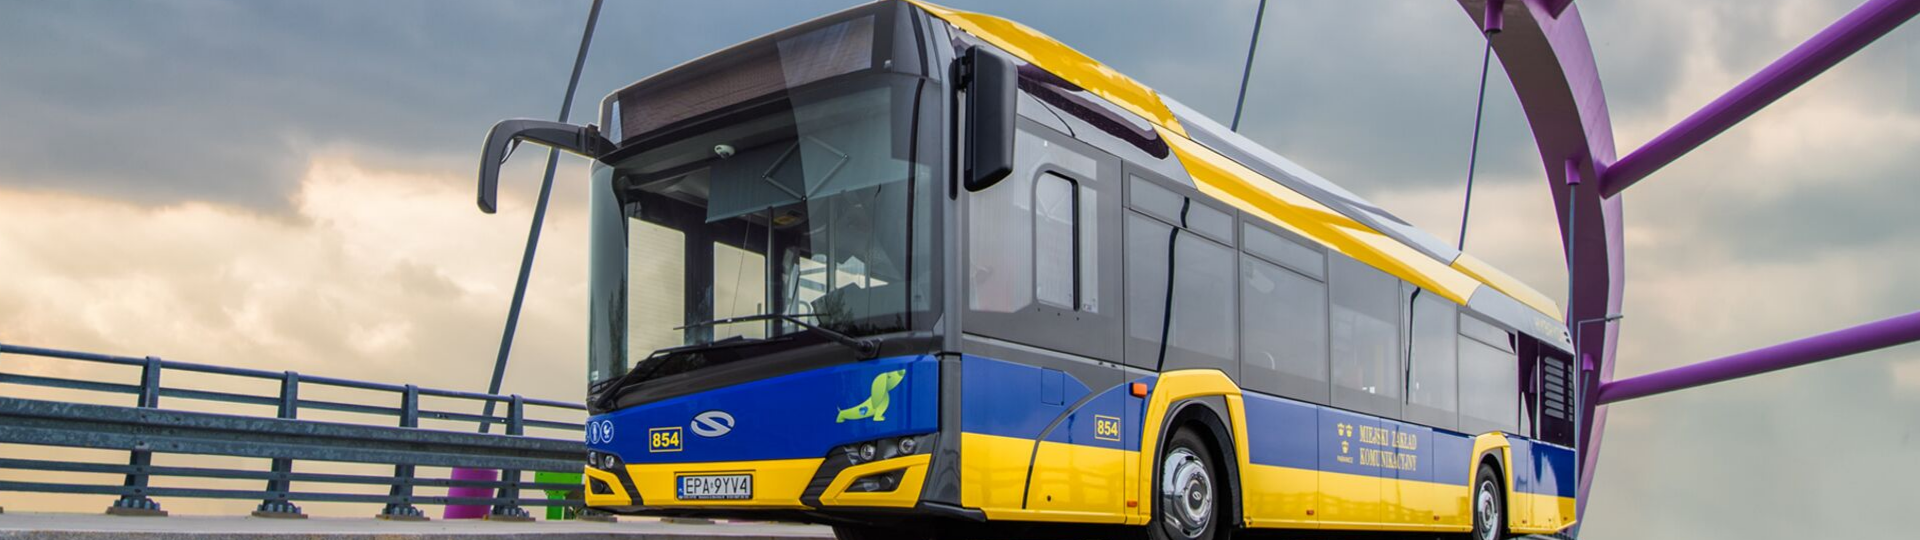 Die städtische Busflotte in Piła wird um 13 emissionsarme Solaris-Busse erweitert